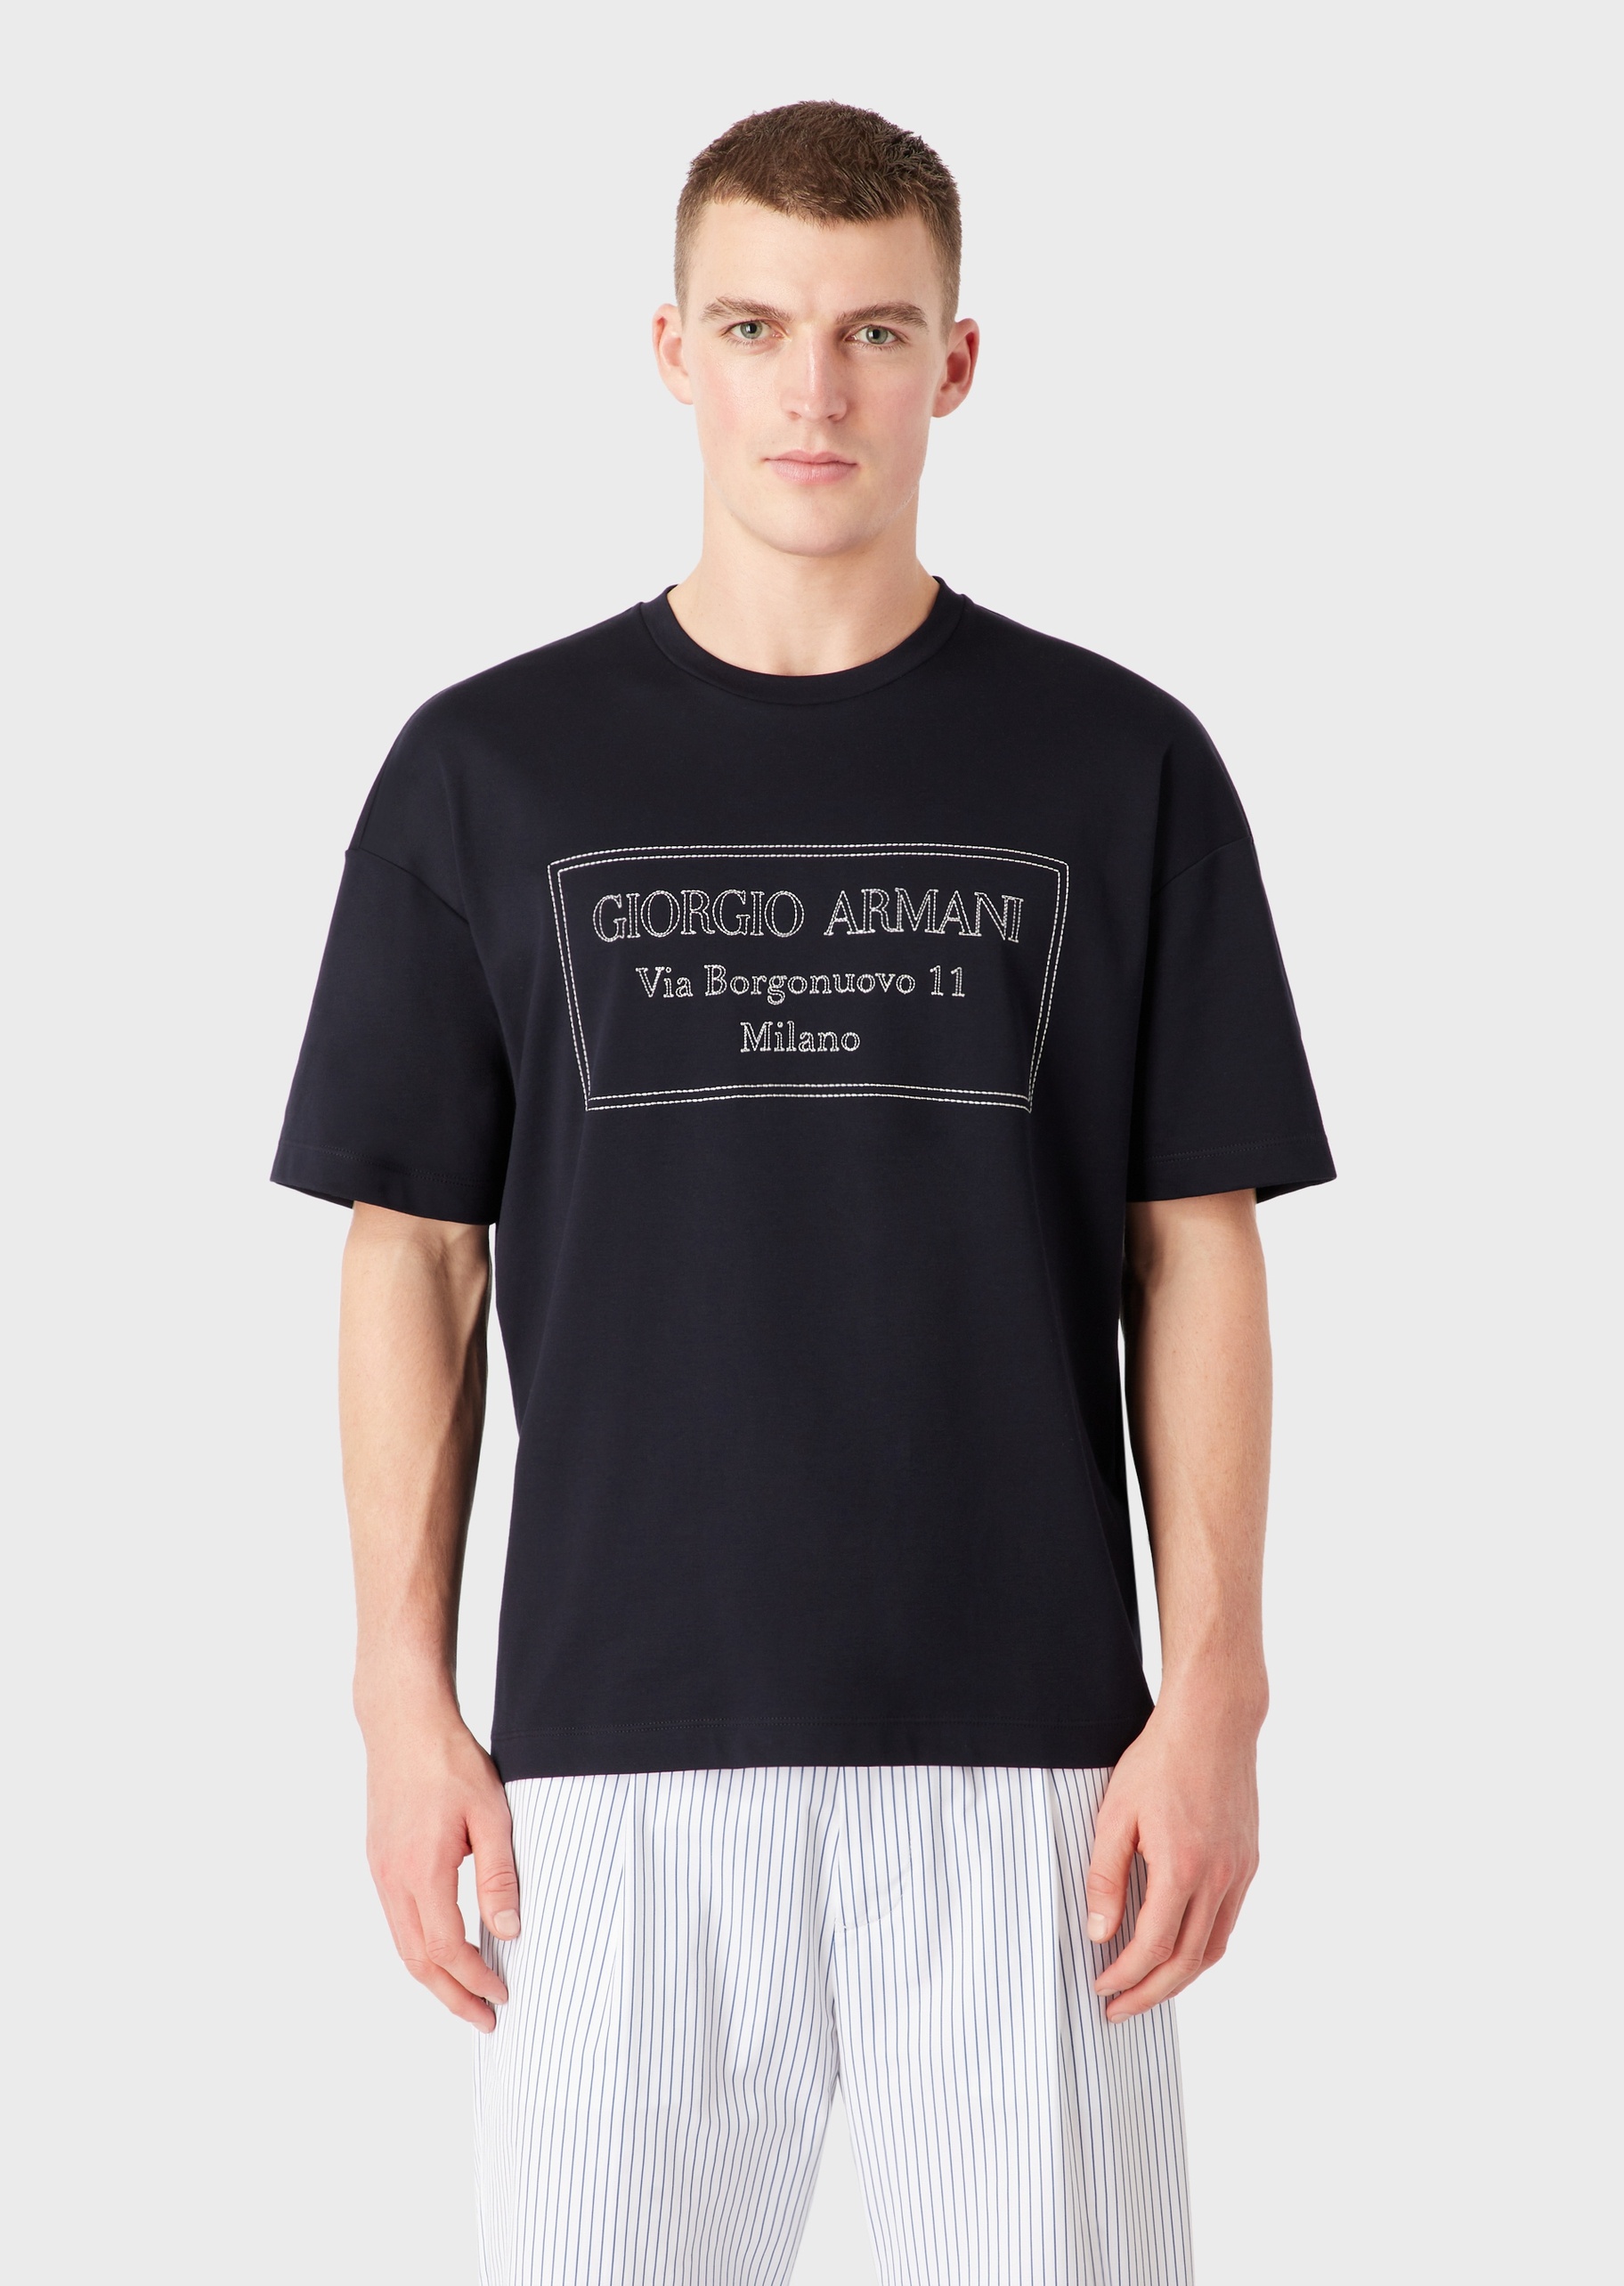 Giorgio Armani 男士全棉宽松短袖圆领落肩都市休闲T恤